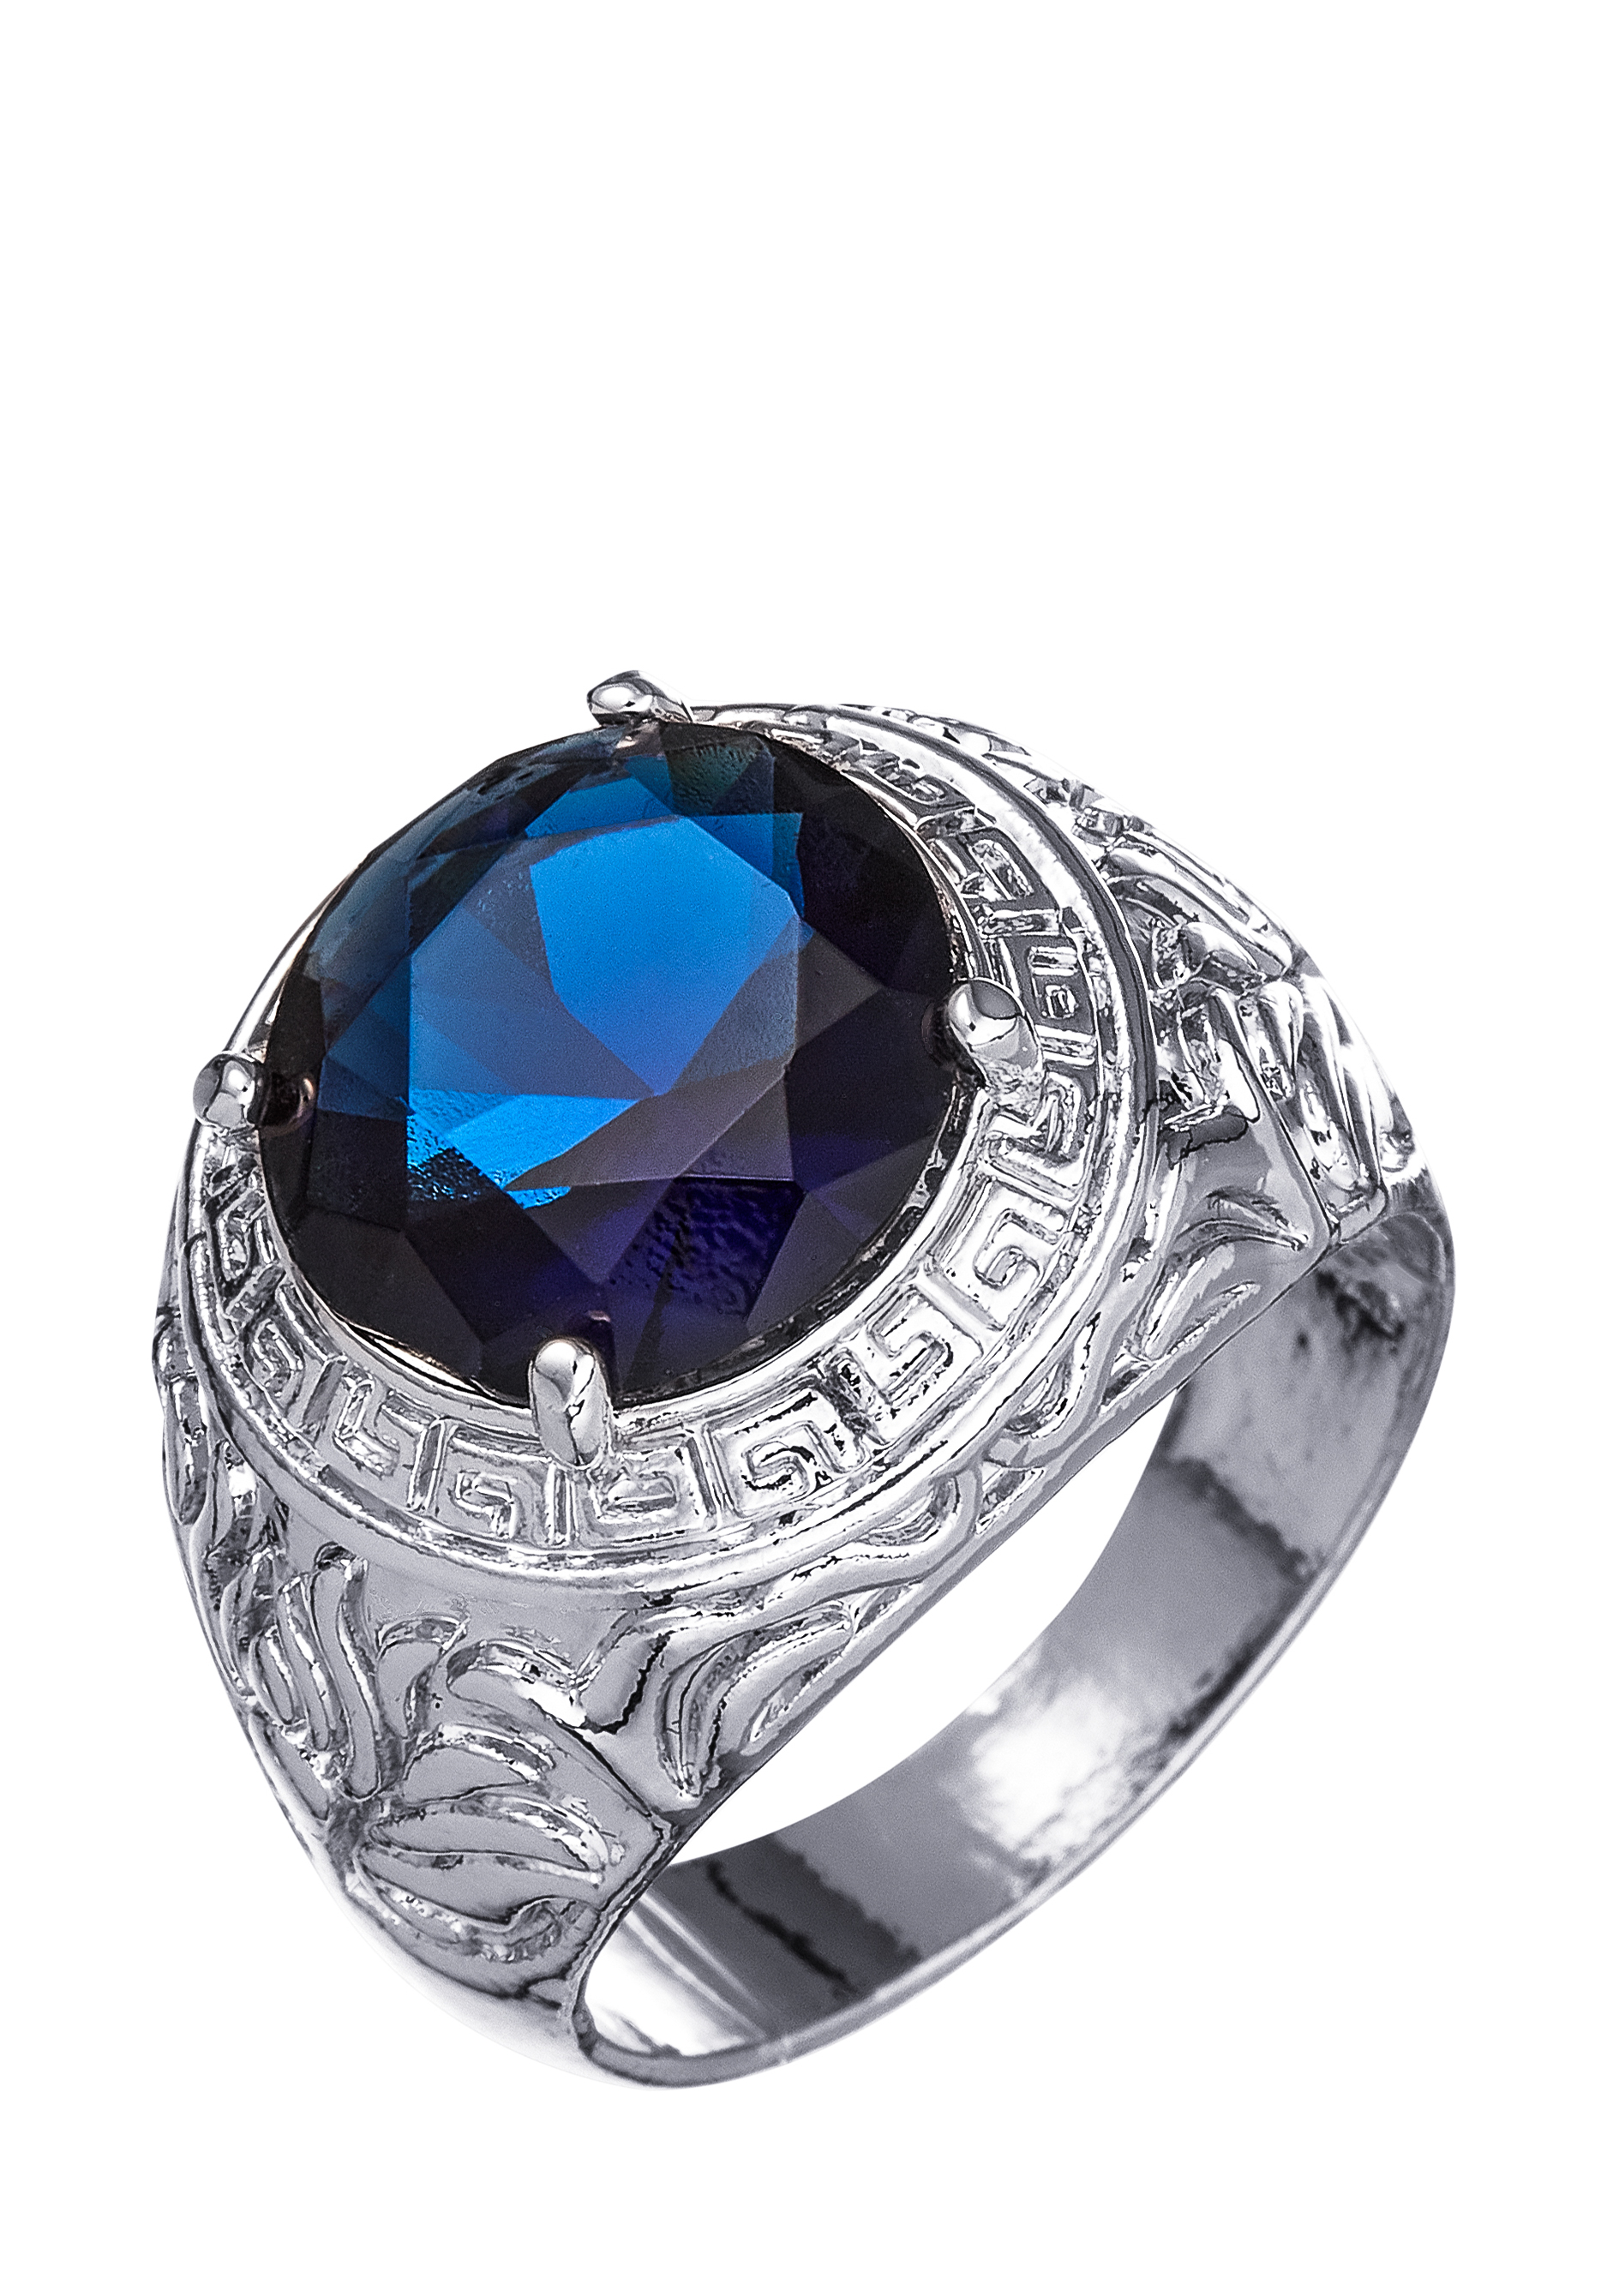 Комплект "Очаровательный вечер" Apsara, цвет синий, размер 19 перстень - фото 7